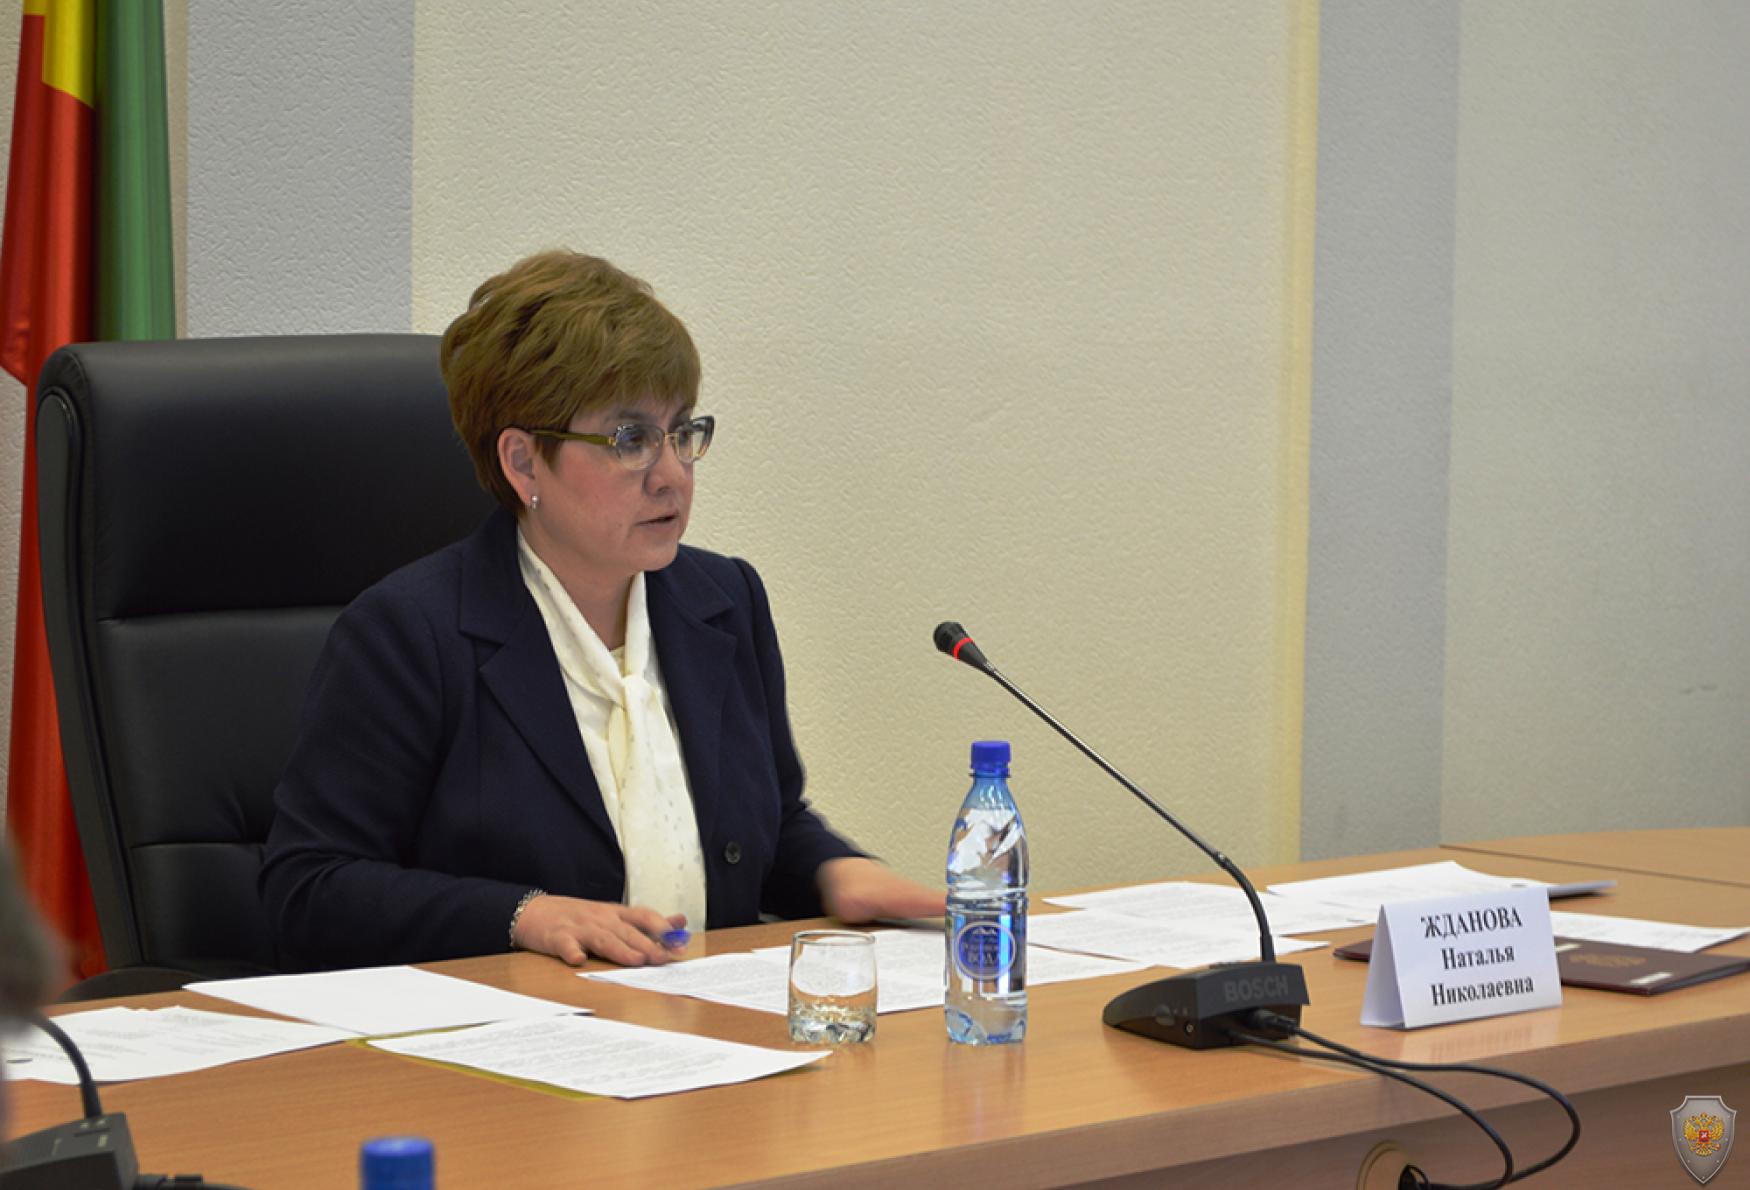 Председатель краевой антитеррористической комиссии, Губернатор Забайкальского края Н.Н.Жданова открывает заседание